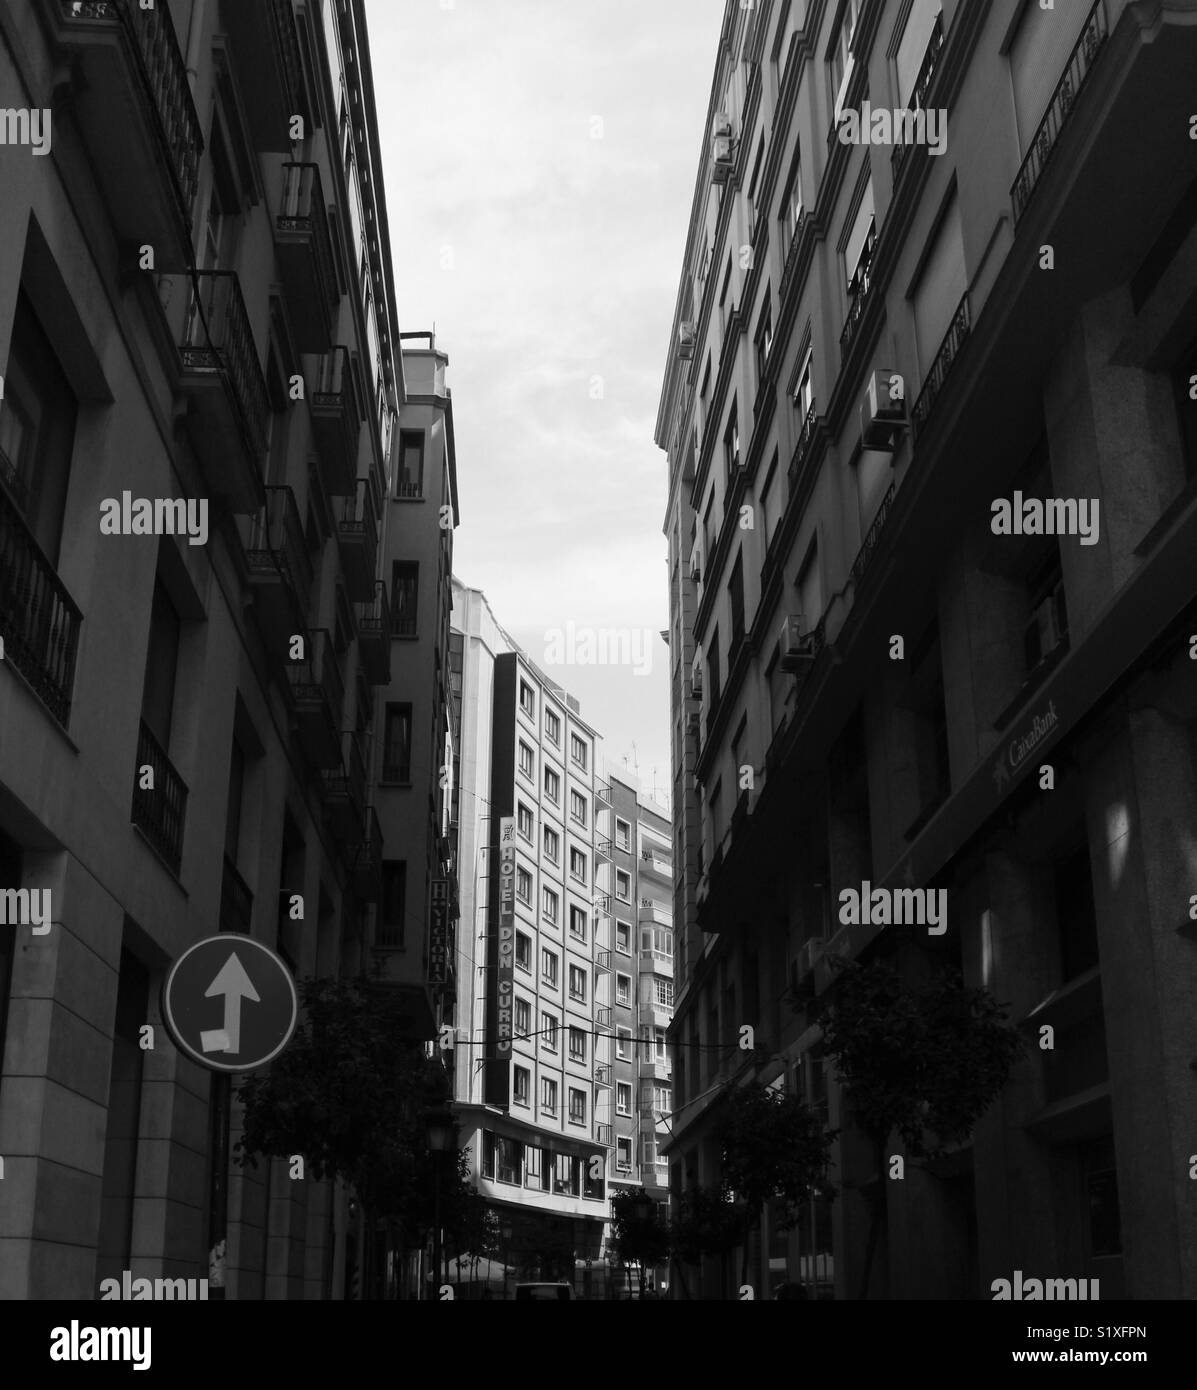 La città di Malaga. Immagine in bianco e nero degli edifici con tono elementi formali. Luce e immagine scura Foto Stock